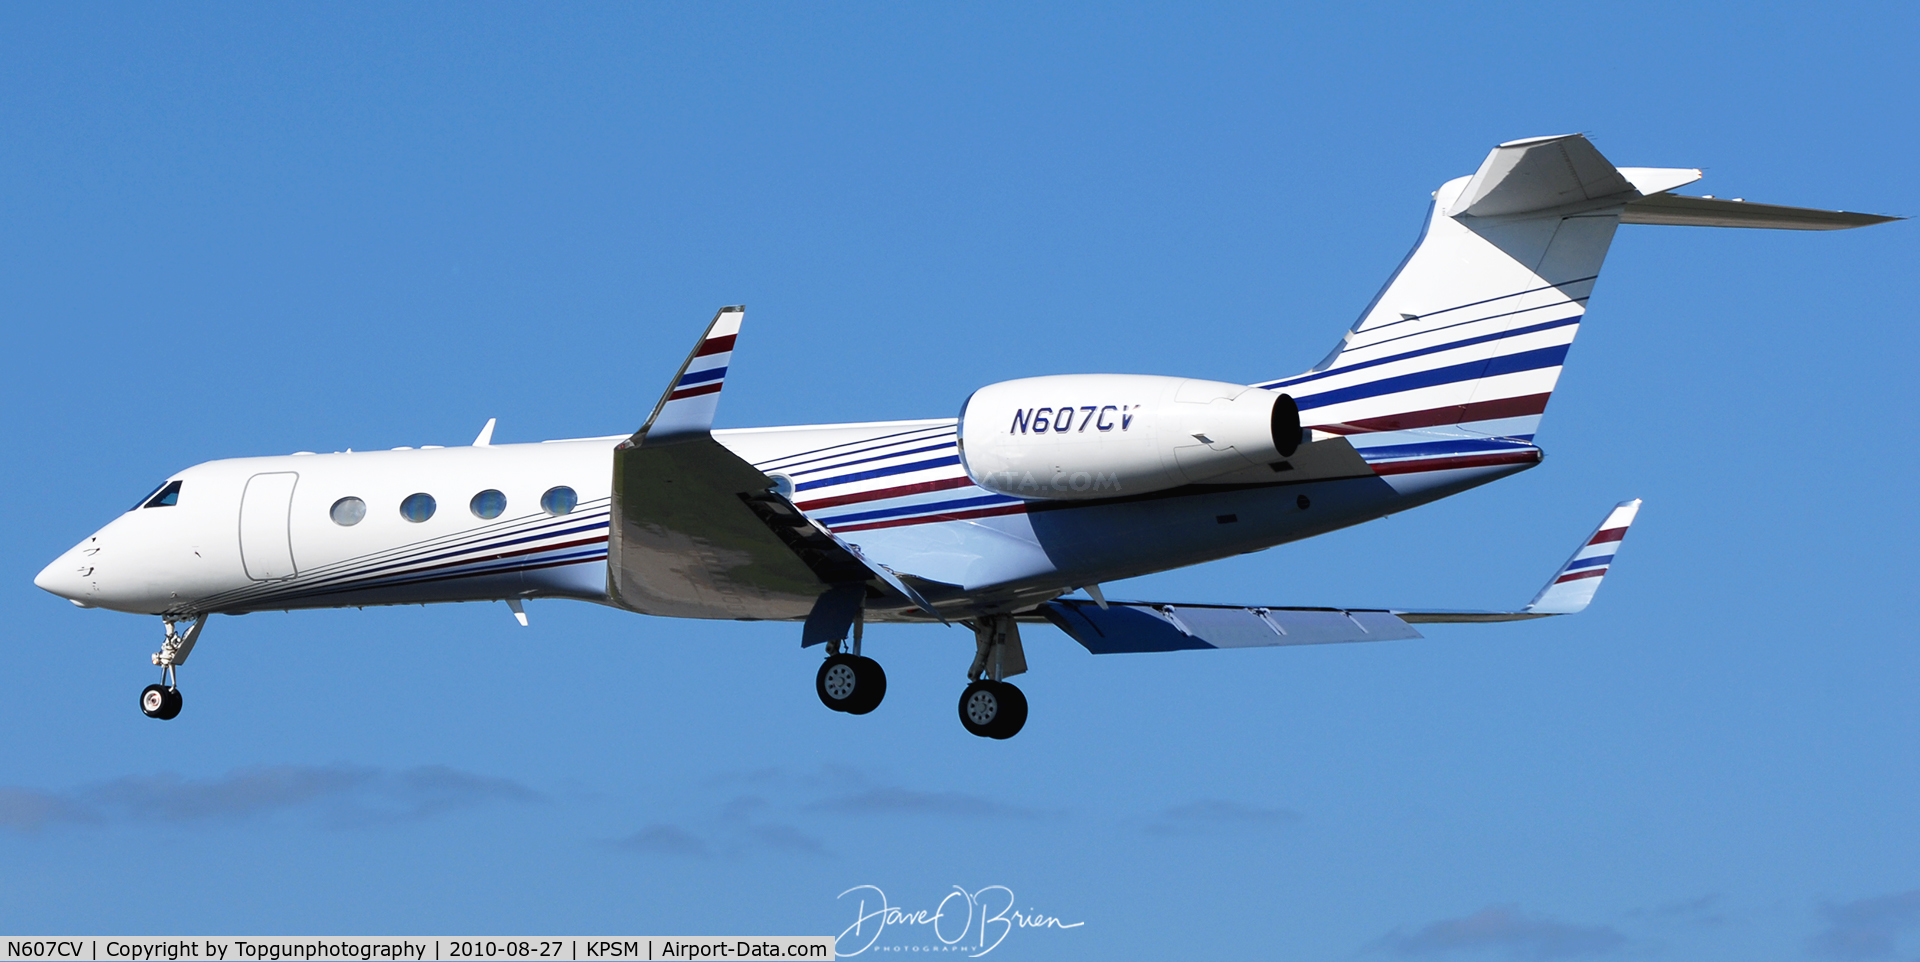 N607CV, 2004 Gulfstream Aerospace GV-SP (G550) C/N 5035, landing RW34